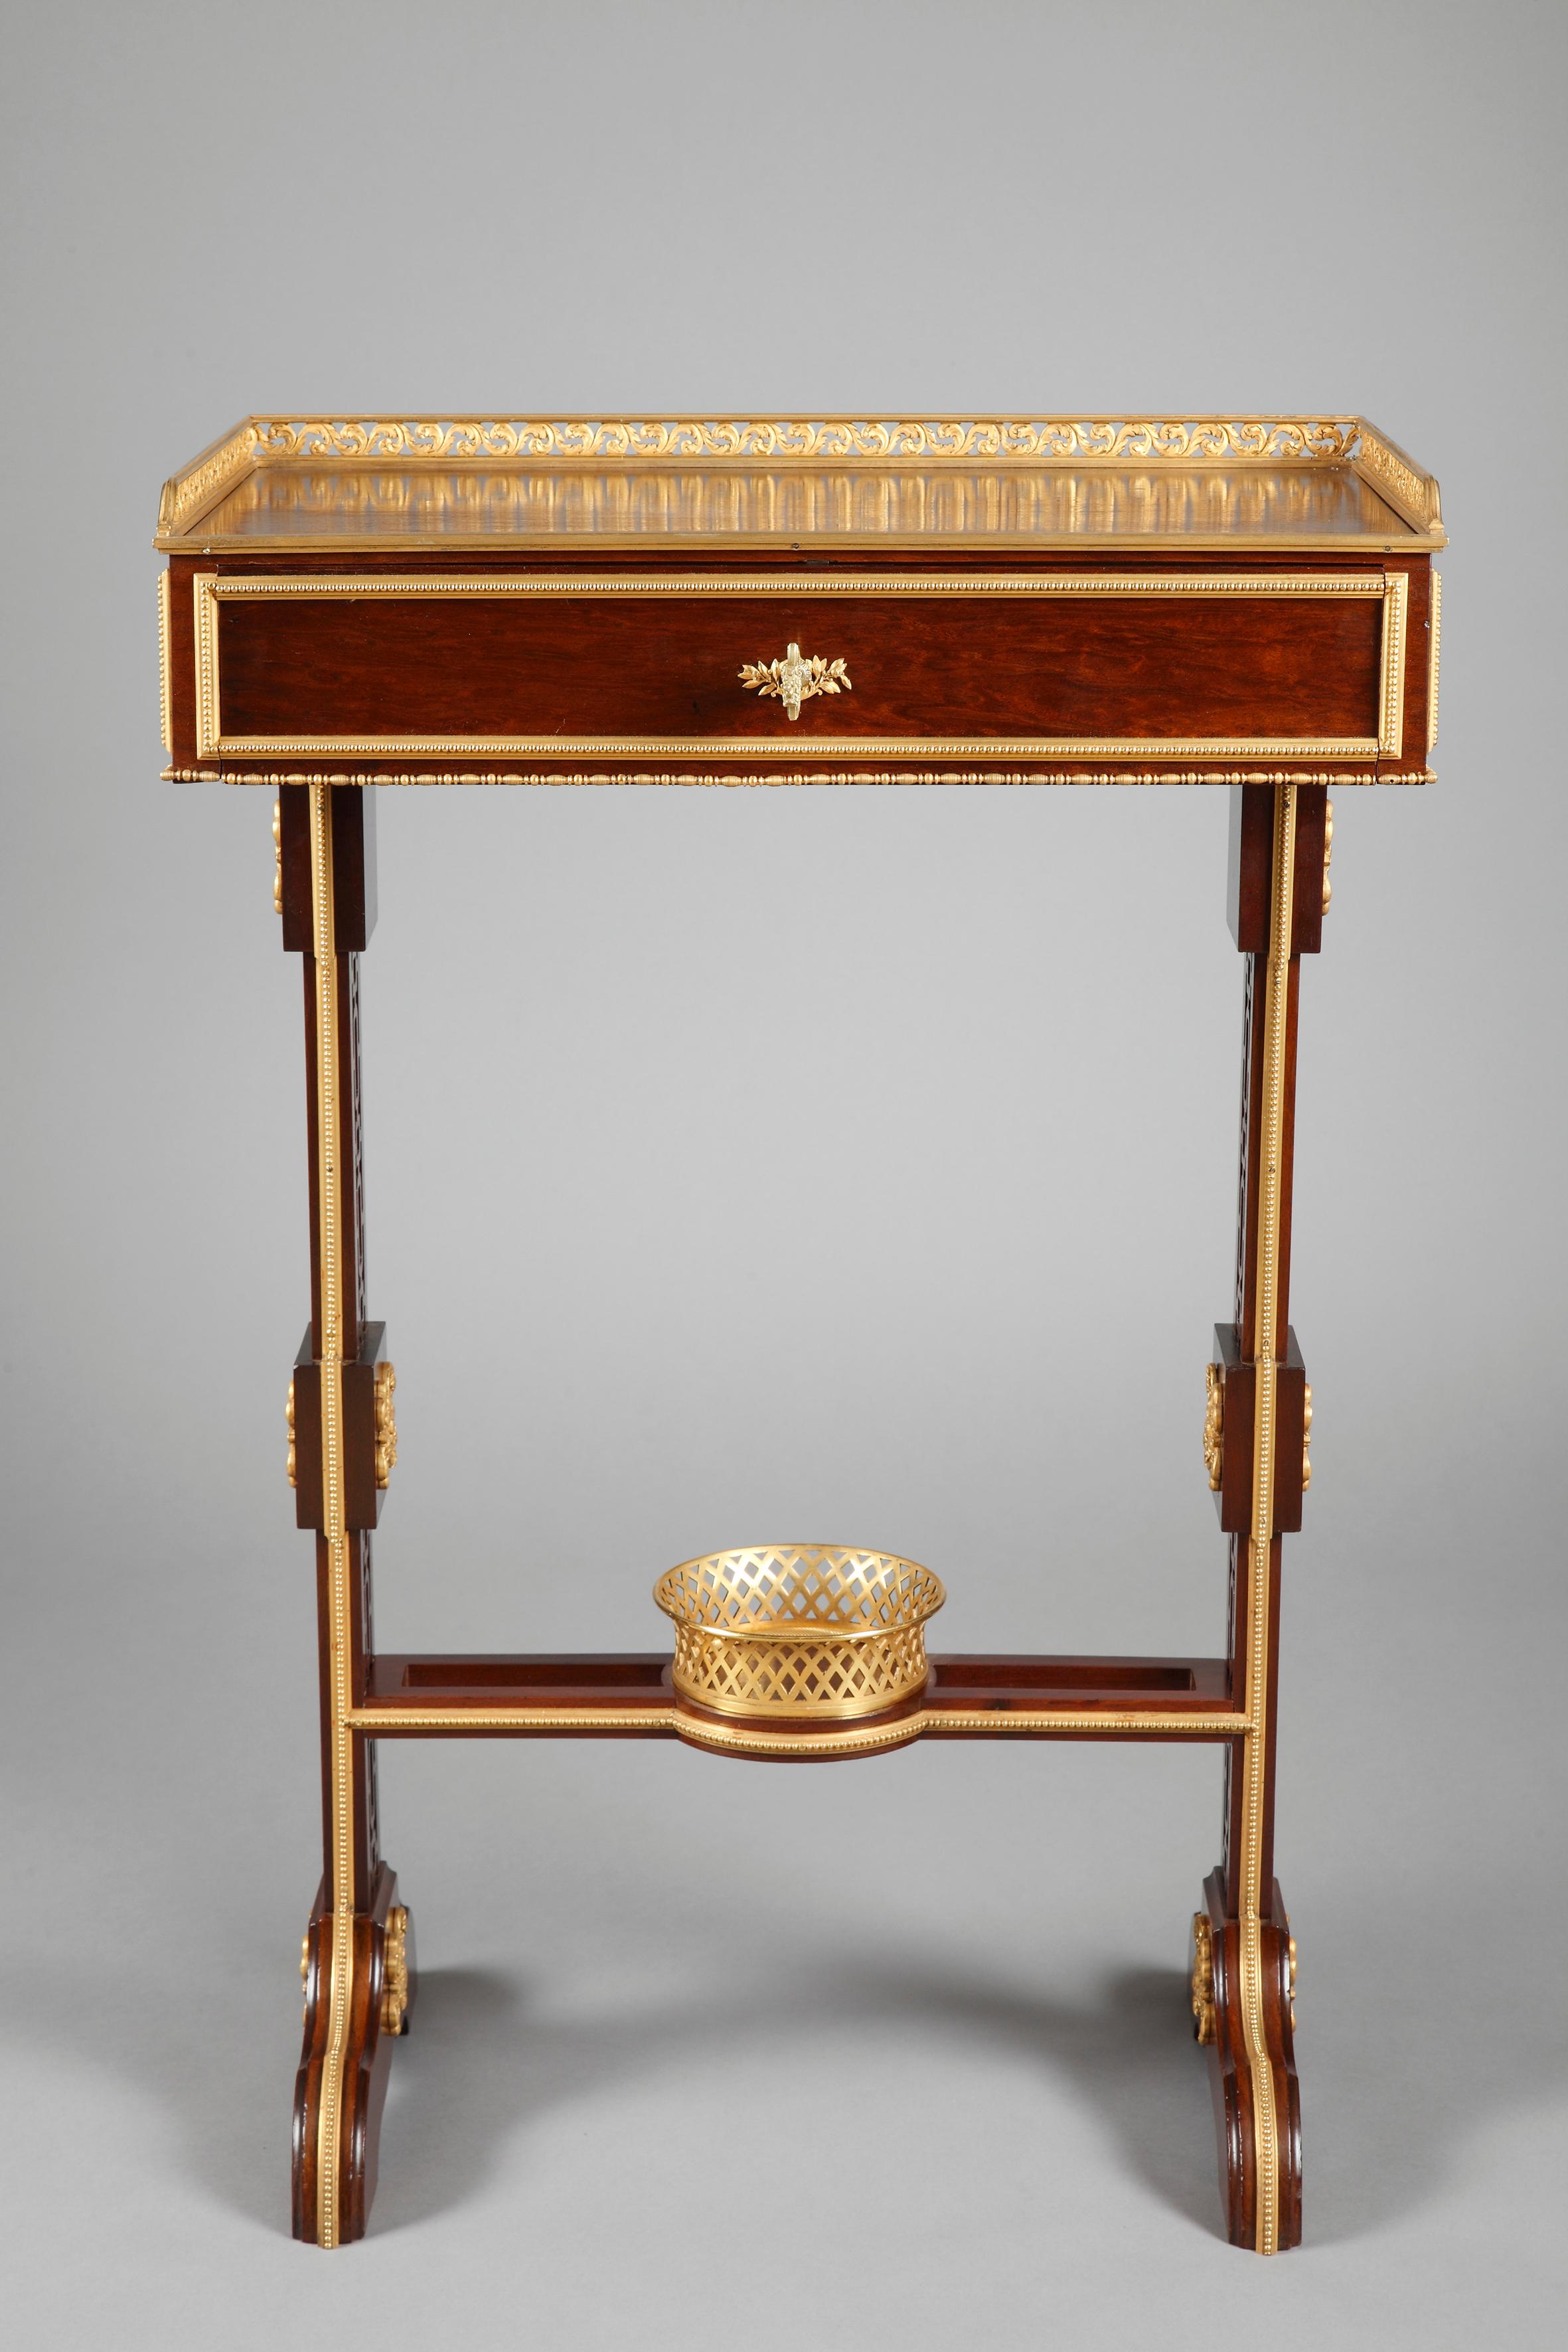 Schöner hölzerner Schreibtisch im Louis XVI-Stil. Die rechteckige Platte ist an drei Seiten von einem fein durchbrochenen und vergoldeten Bronzefries umgeben. Darüber befindet sich eine Schublade, deren Vorderseite eine Klappe bildet, die sich durch